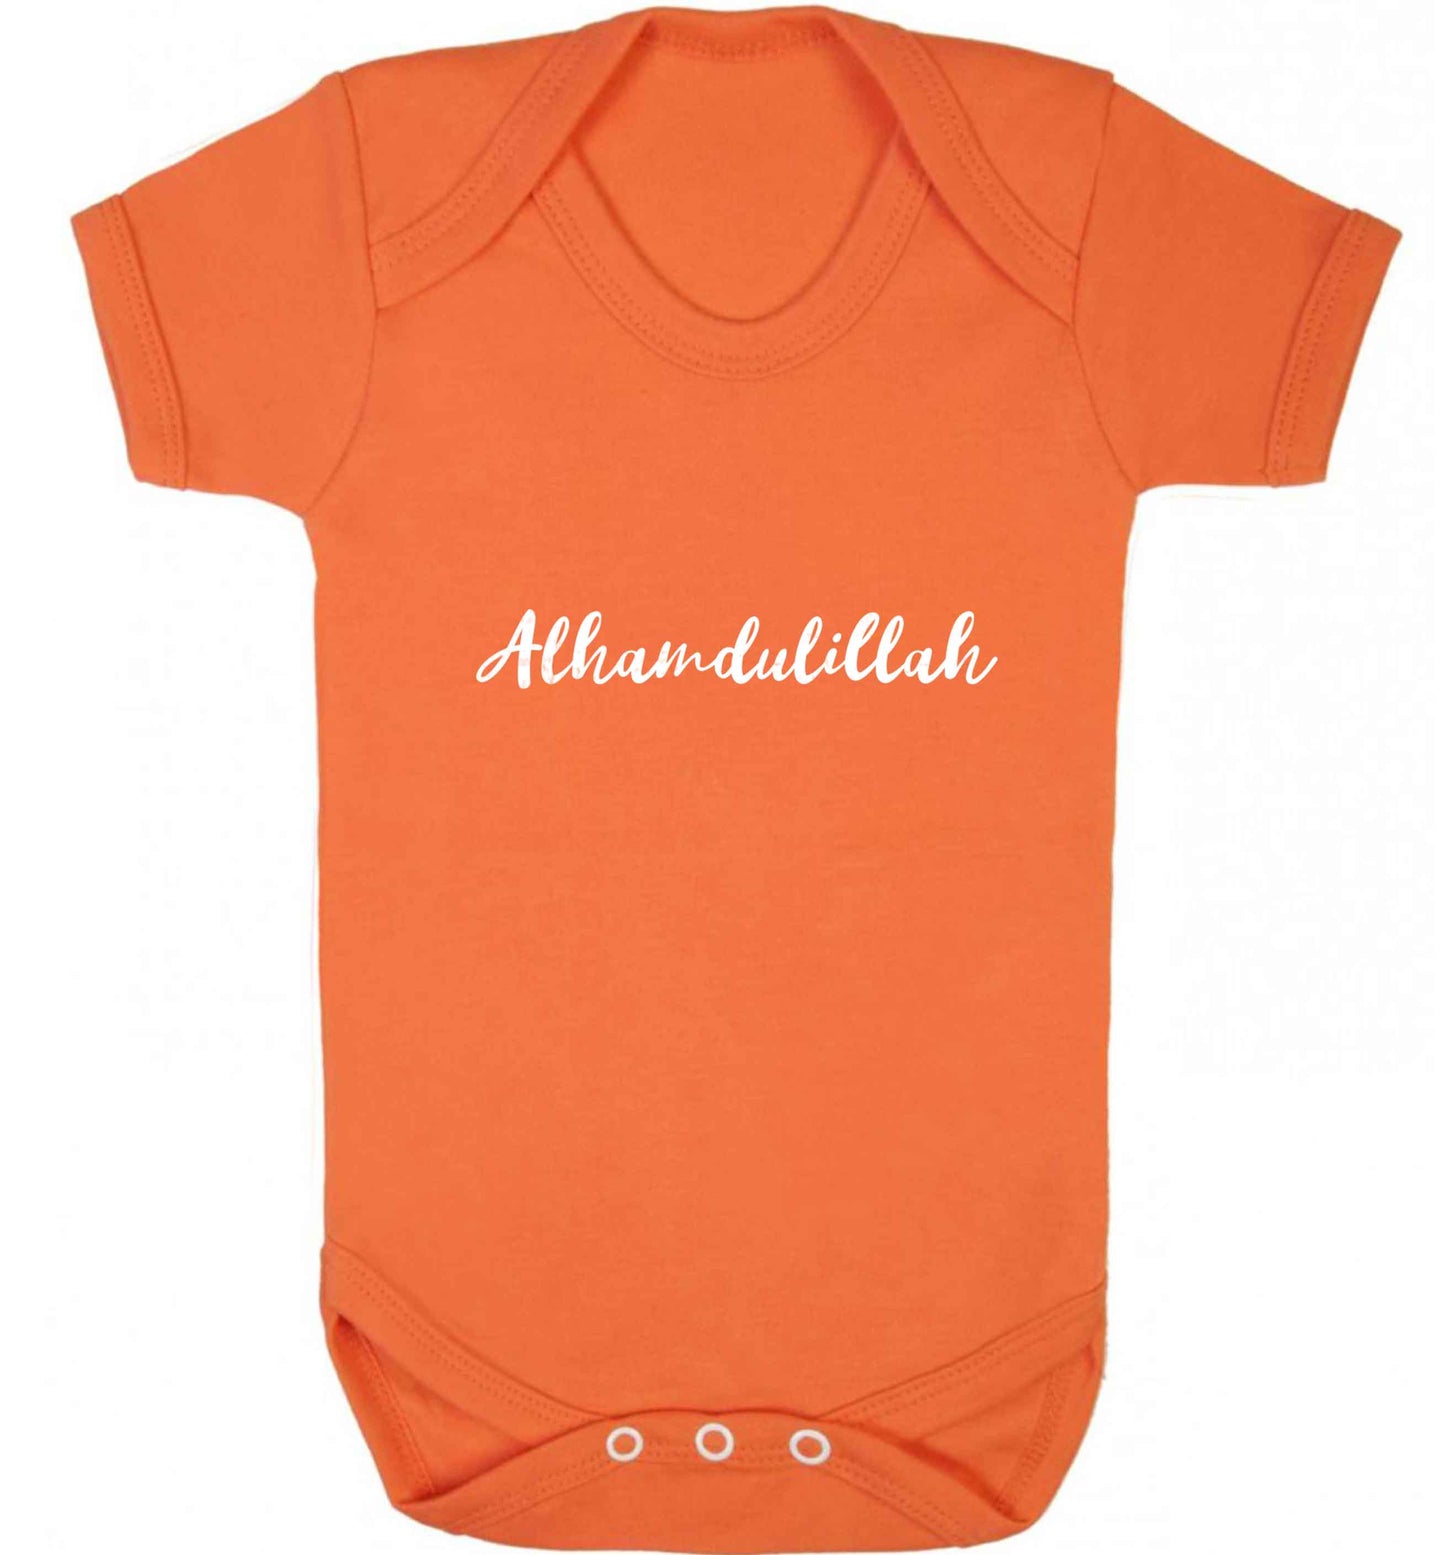 alhamdulillah baby vest orange 18-24 months